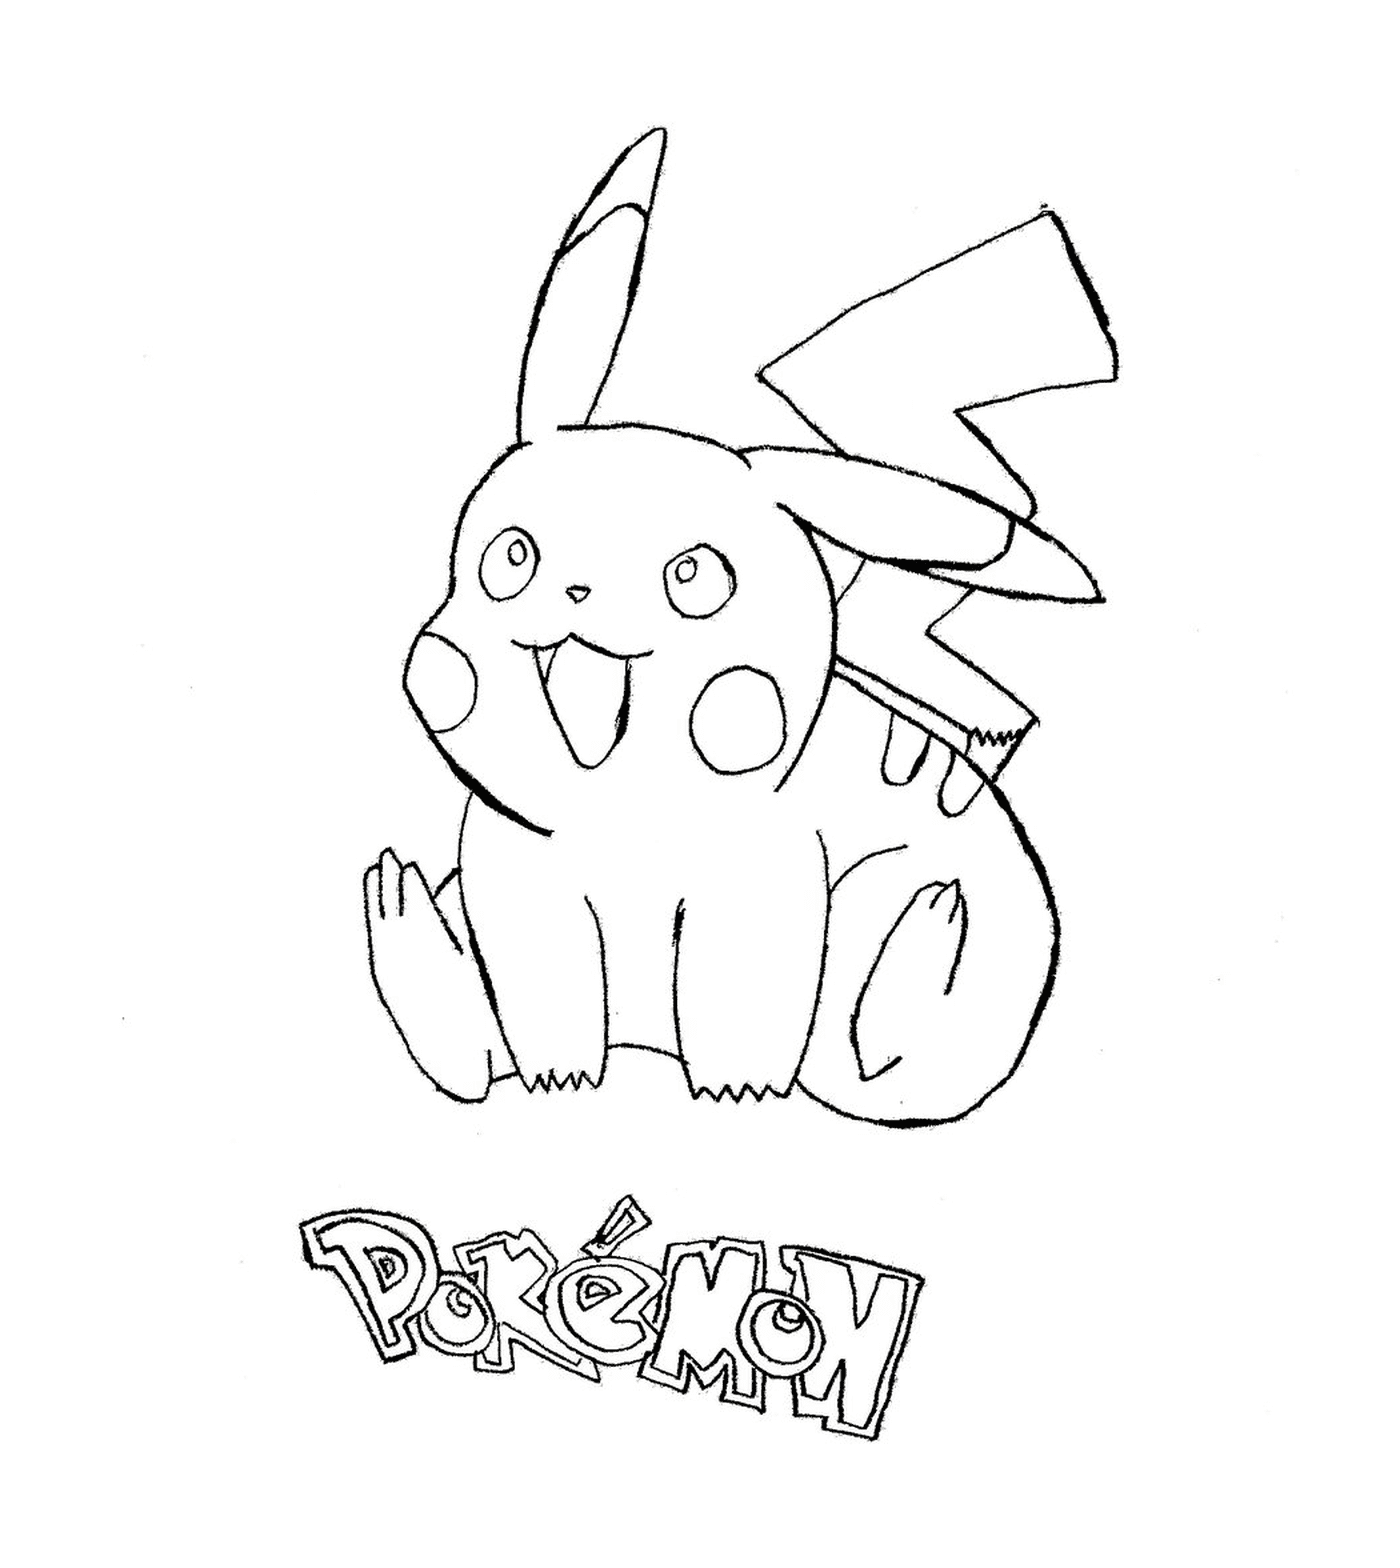  Pikachu, ein schönes Pokémon 